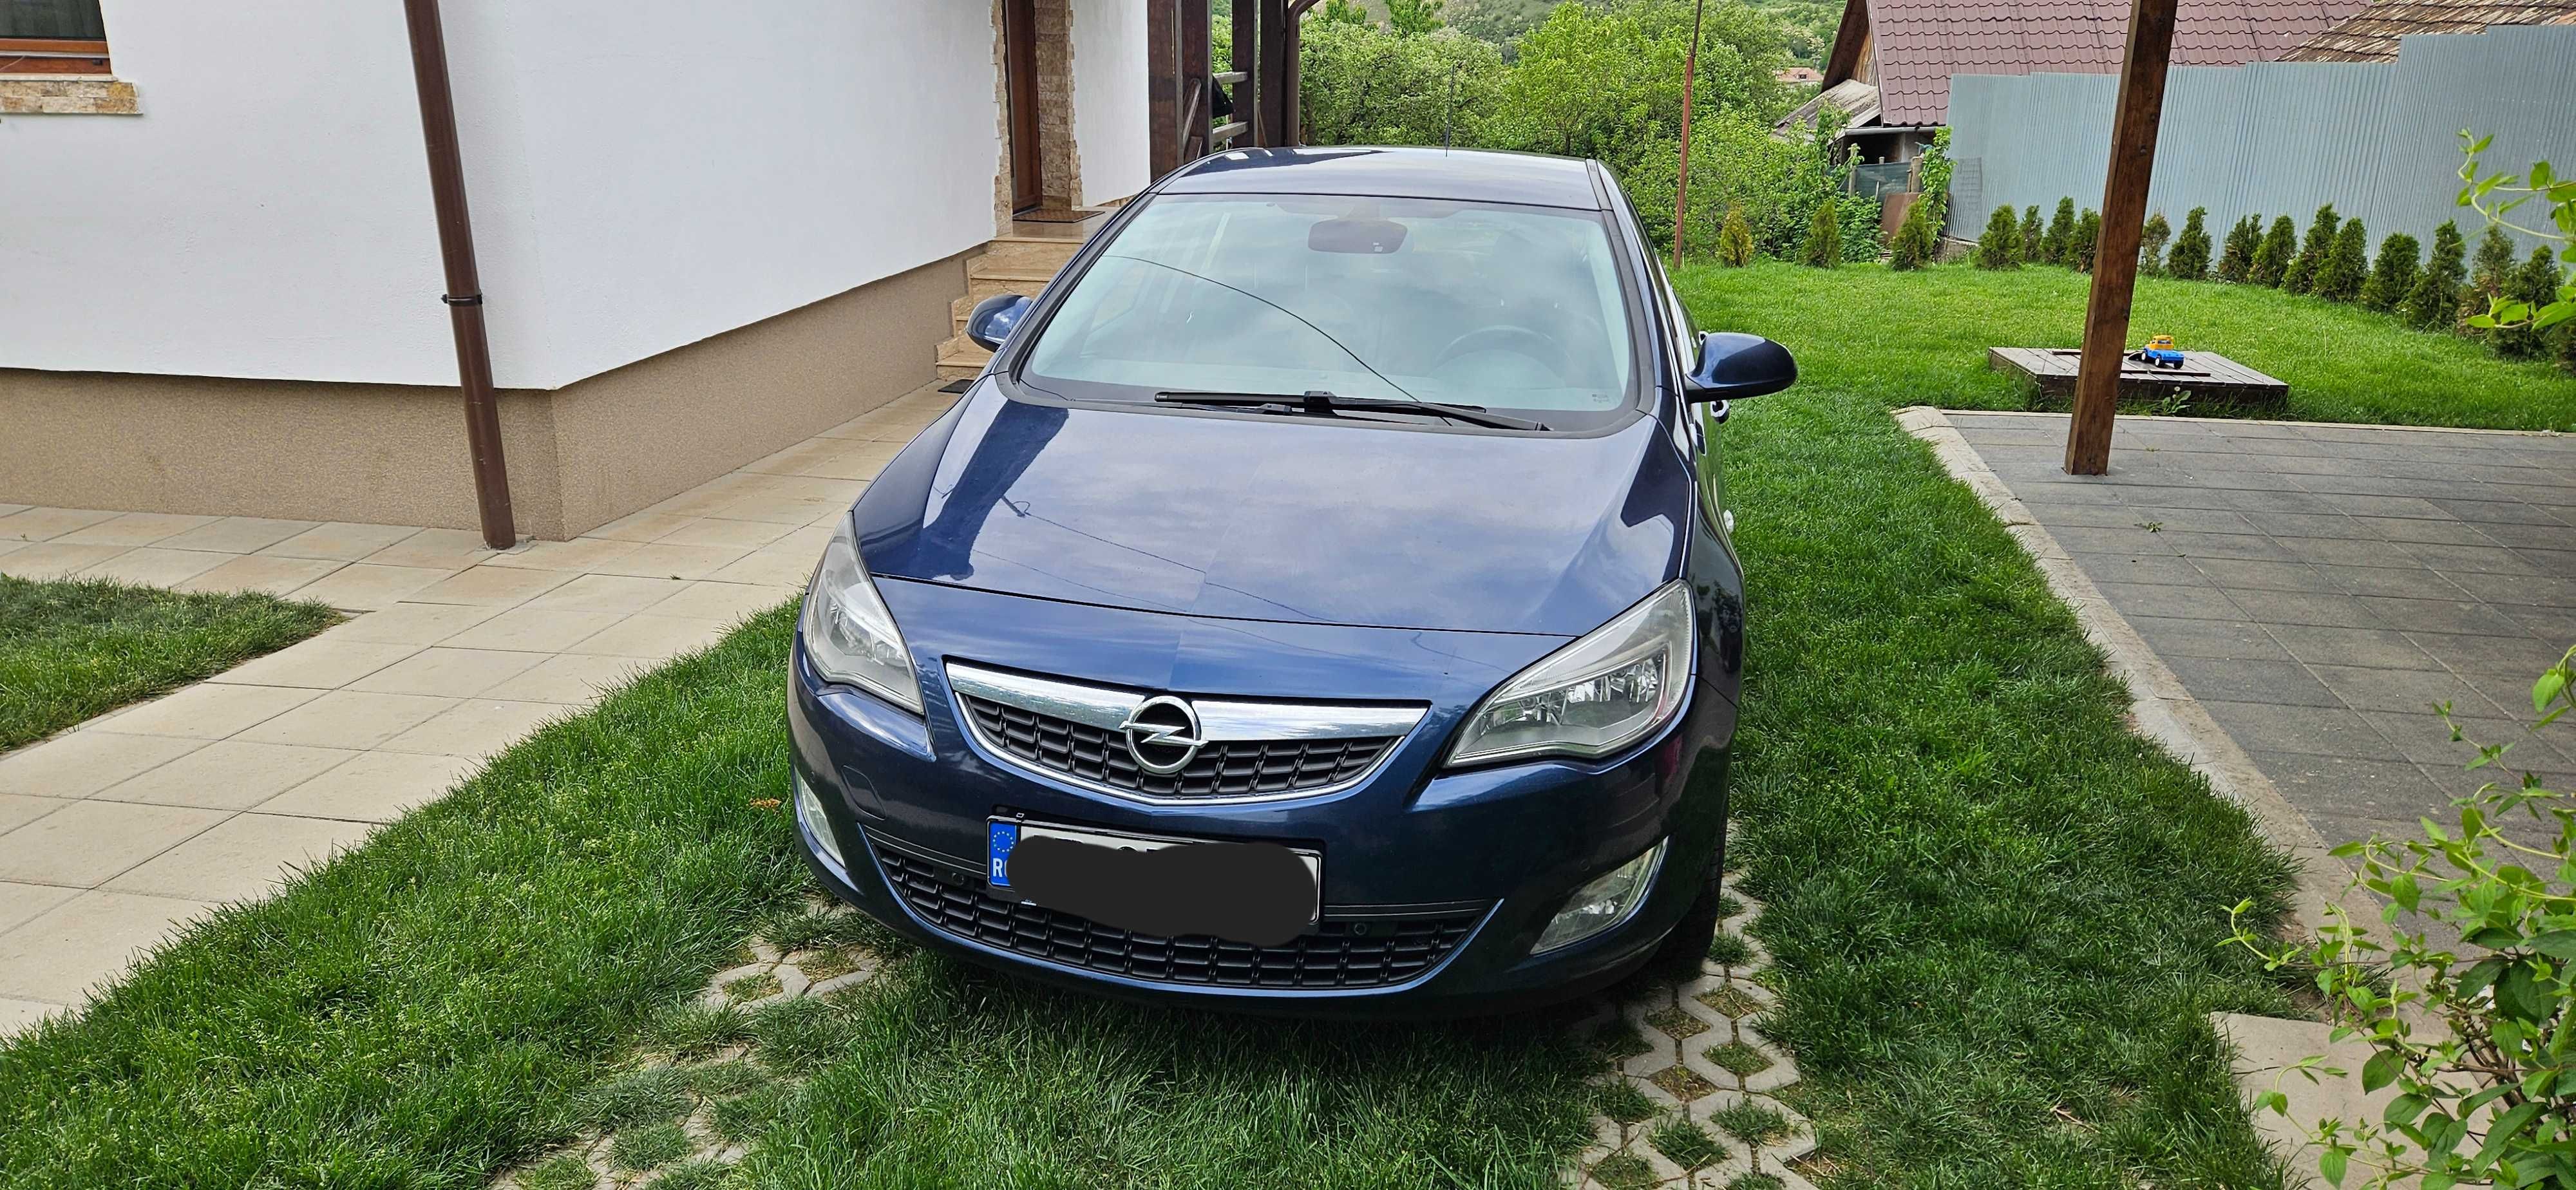 Opel Astra 1.7 CDTI unic proprietar, achizitionata noua de la Opel CJ